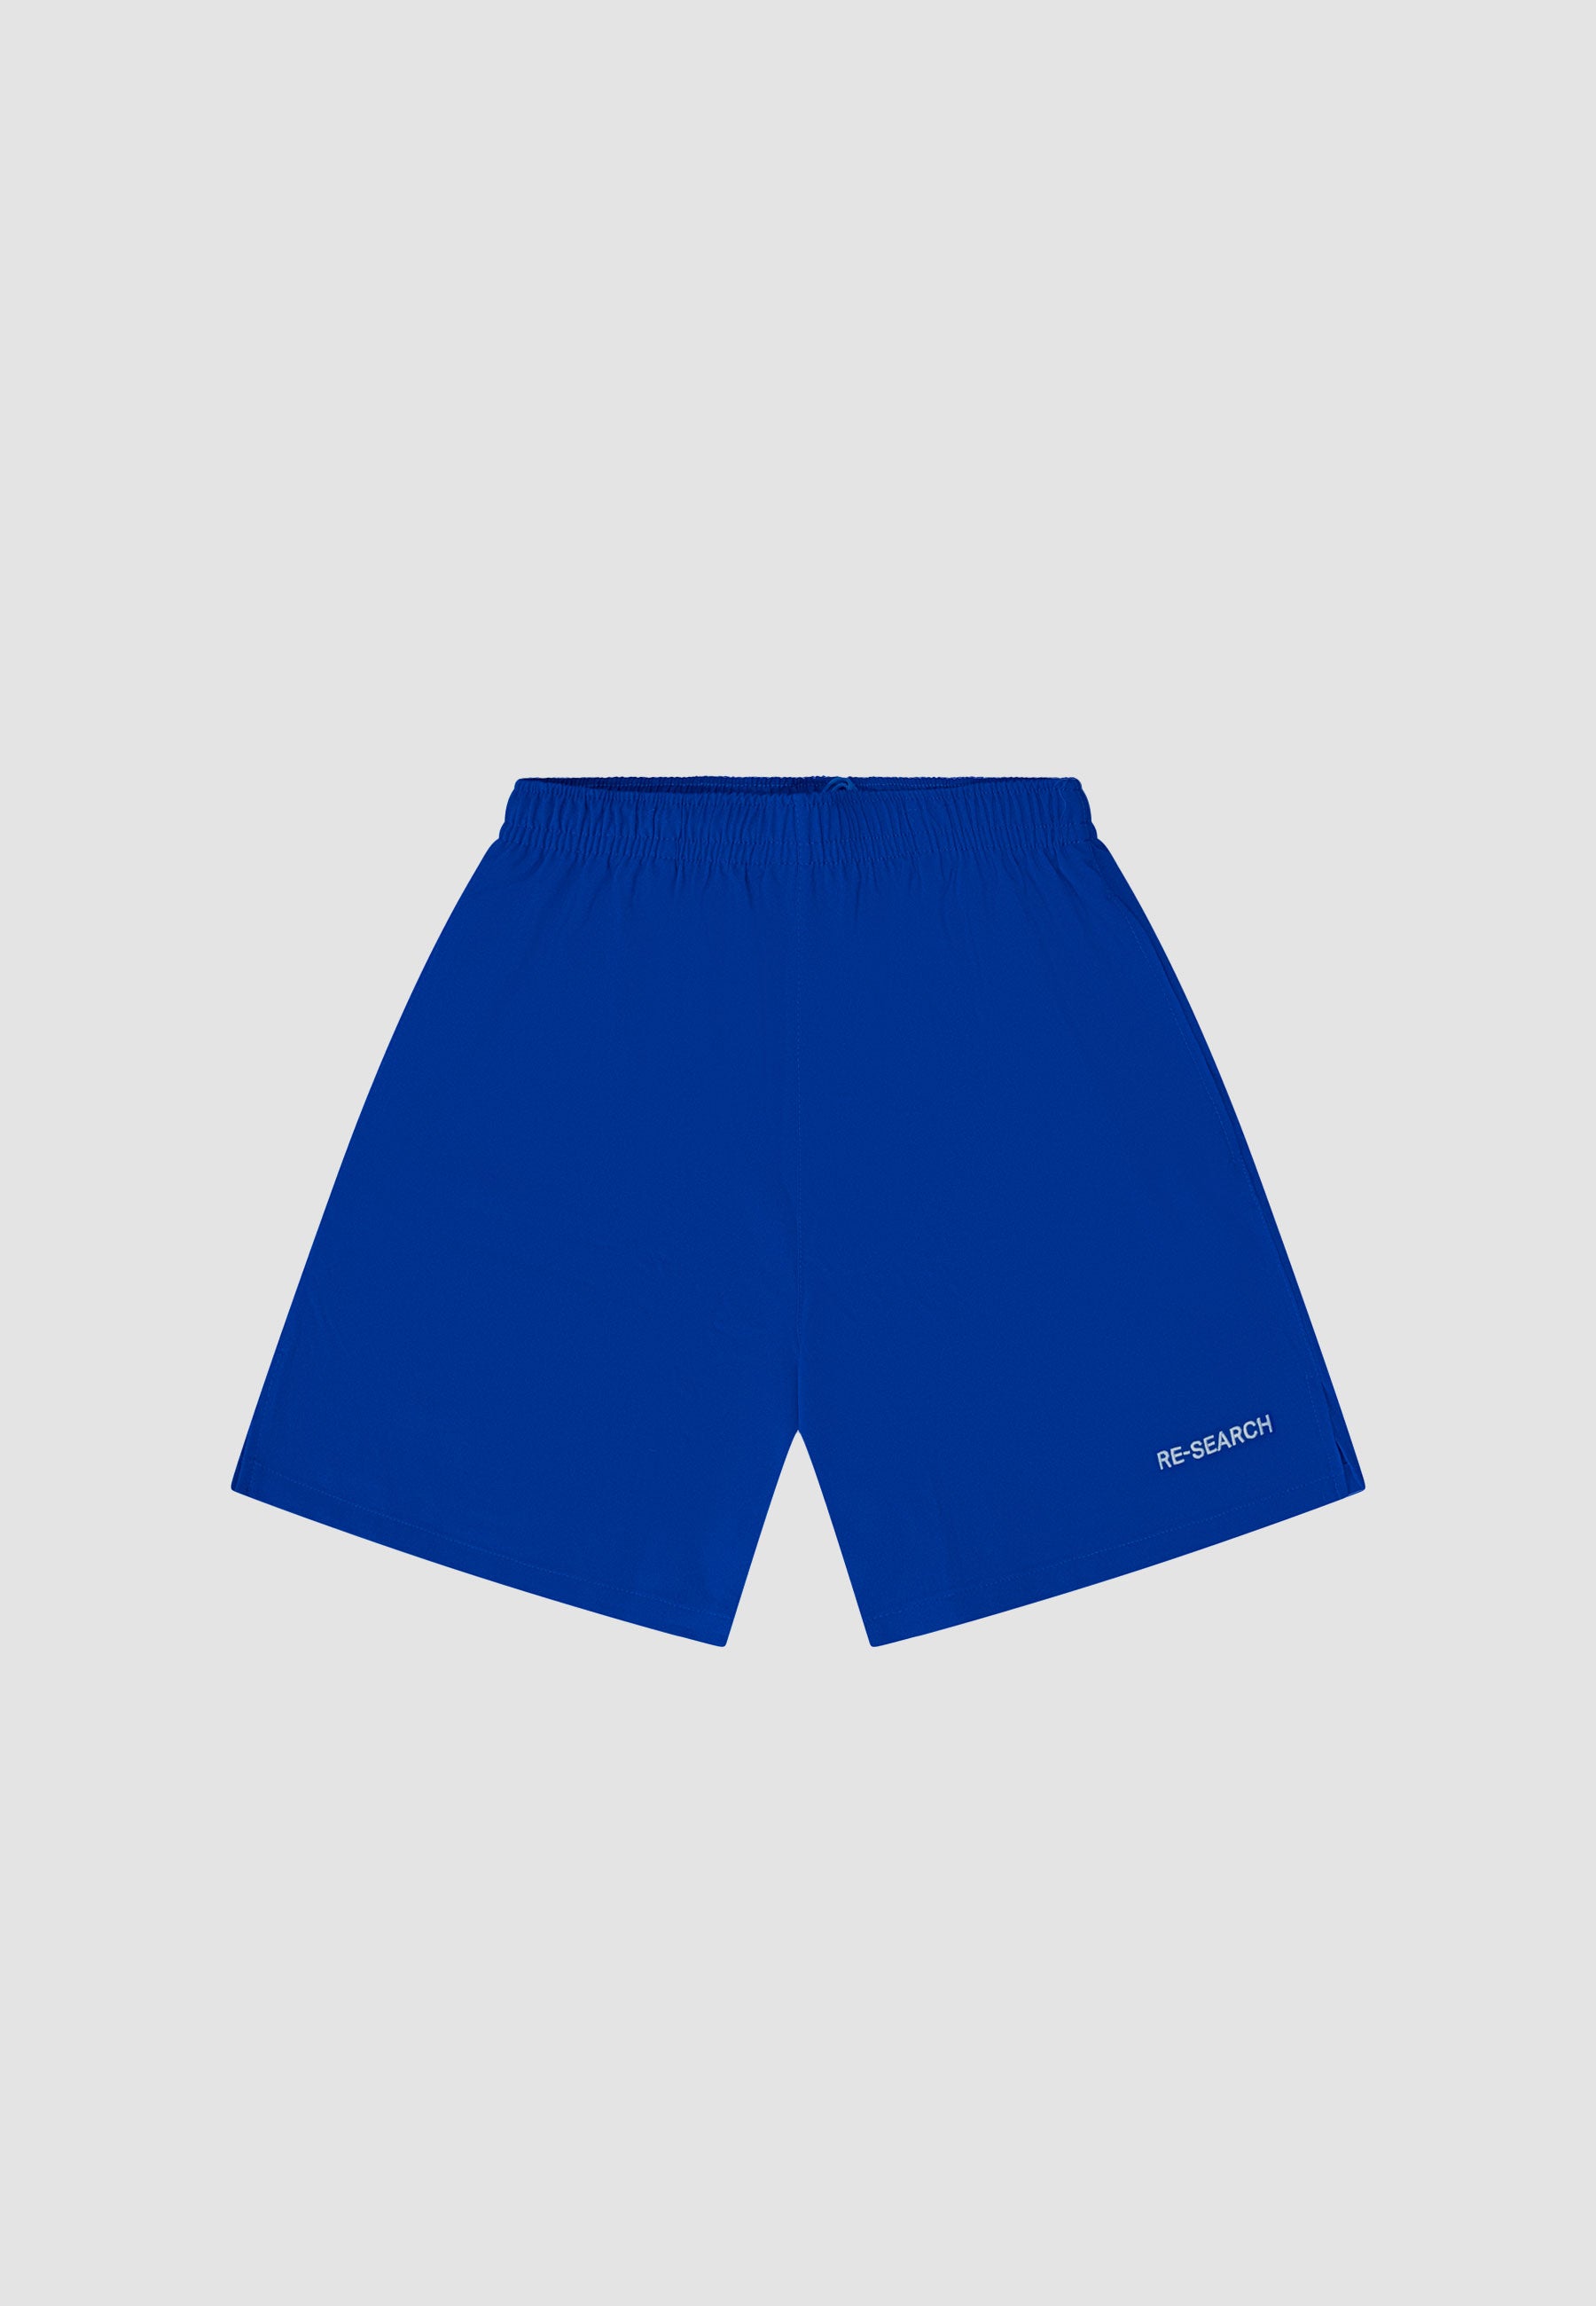 All Terrain Shorts - Königsblau